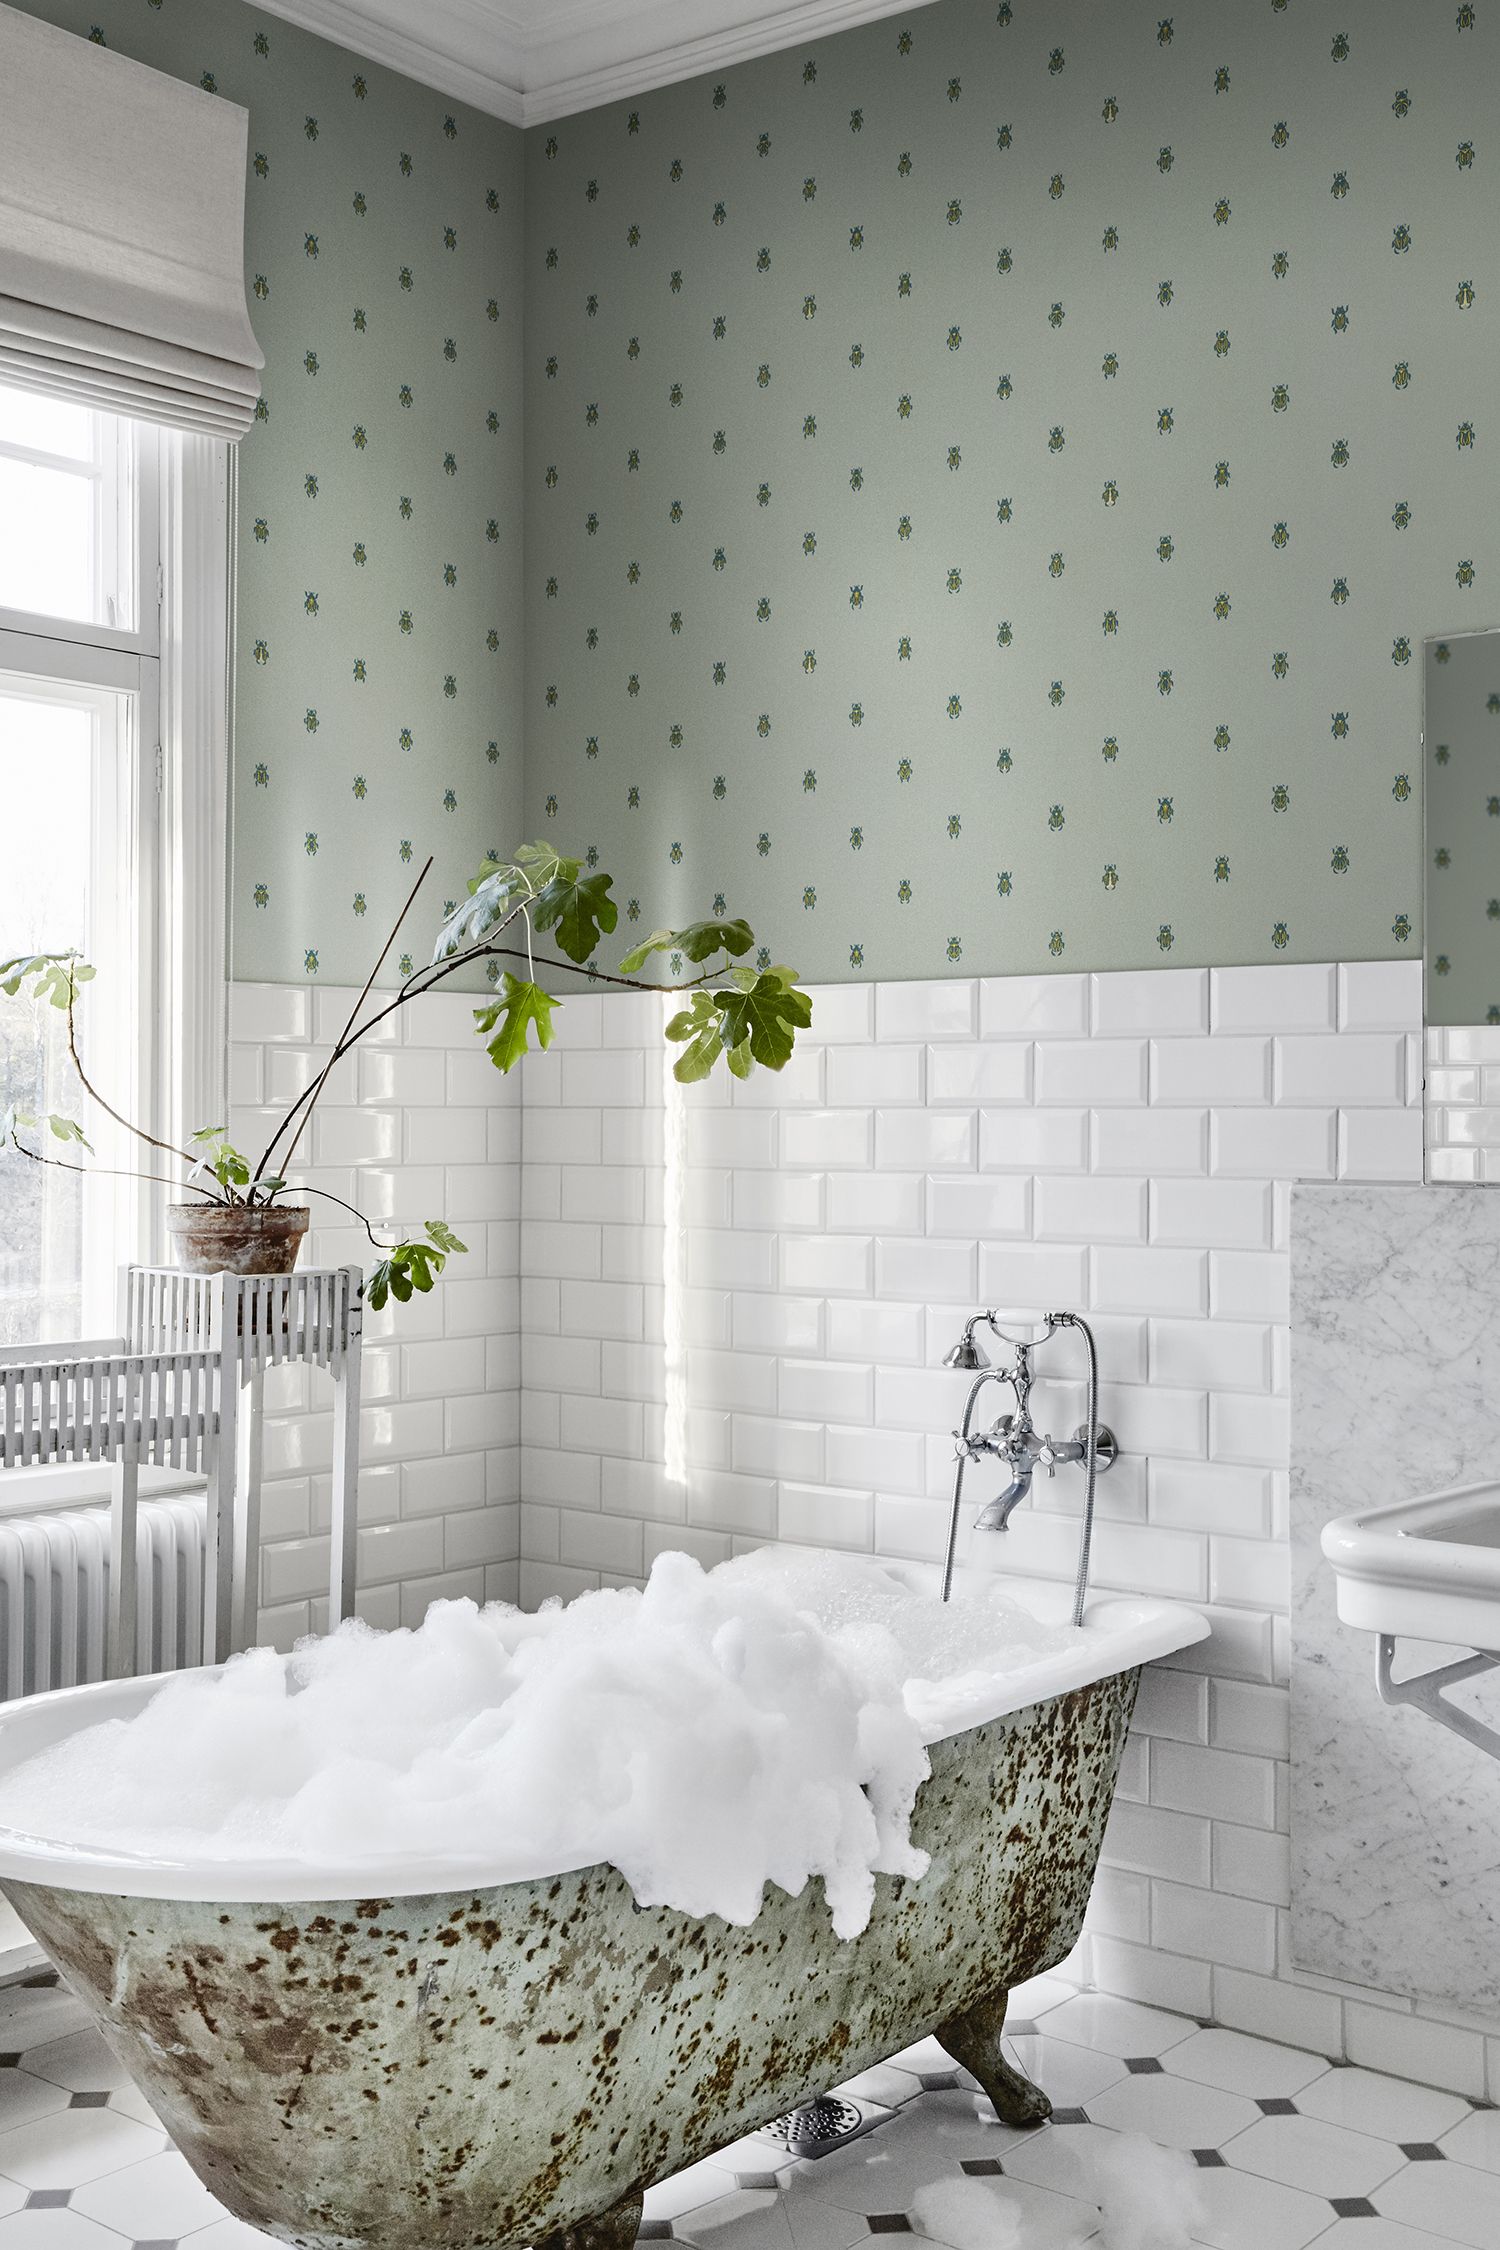 Papel pintado en el baño: 5 propuestas que te van a encantar